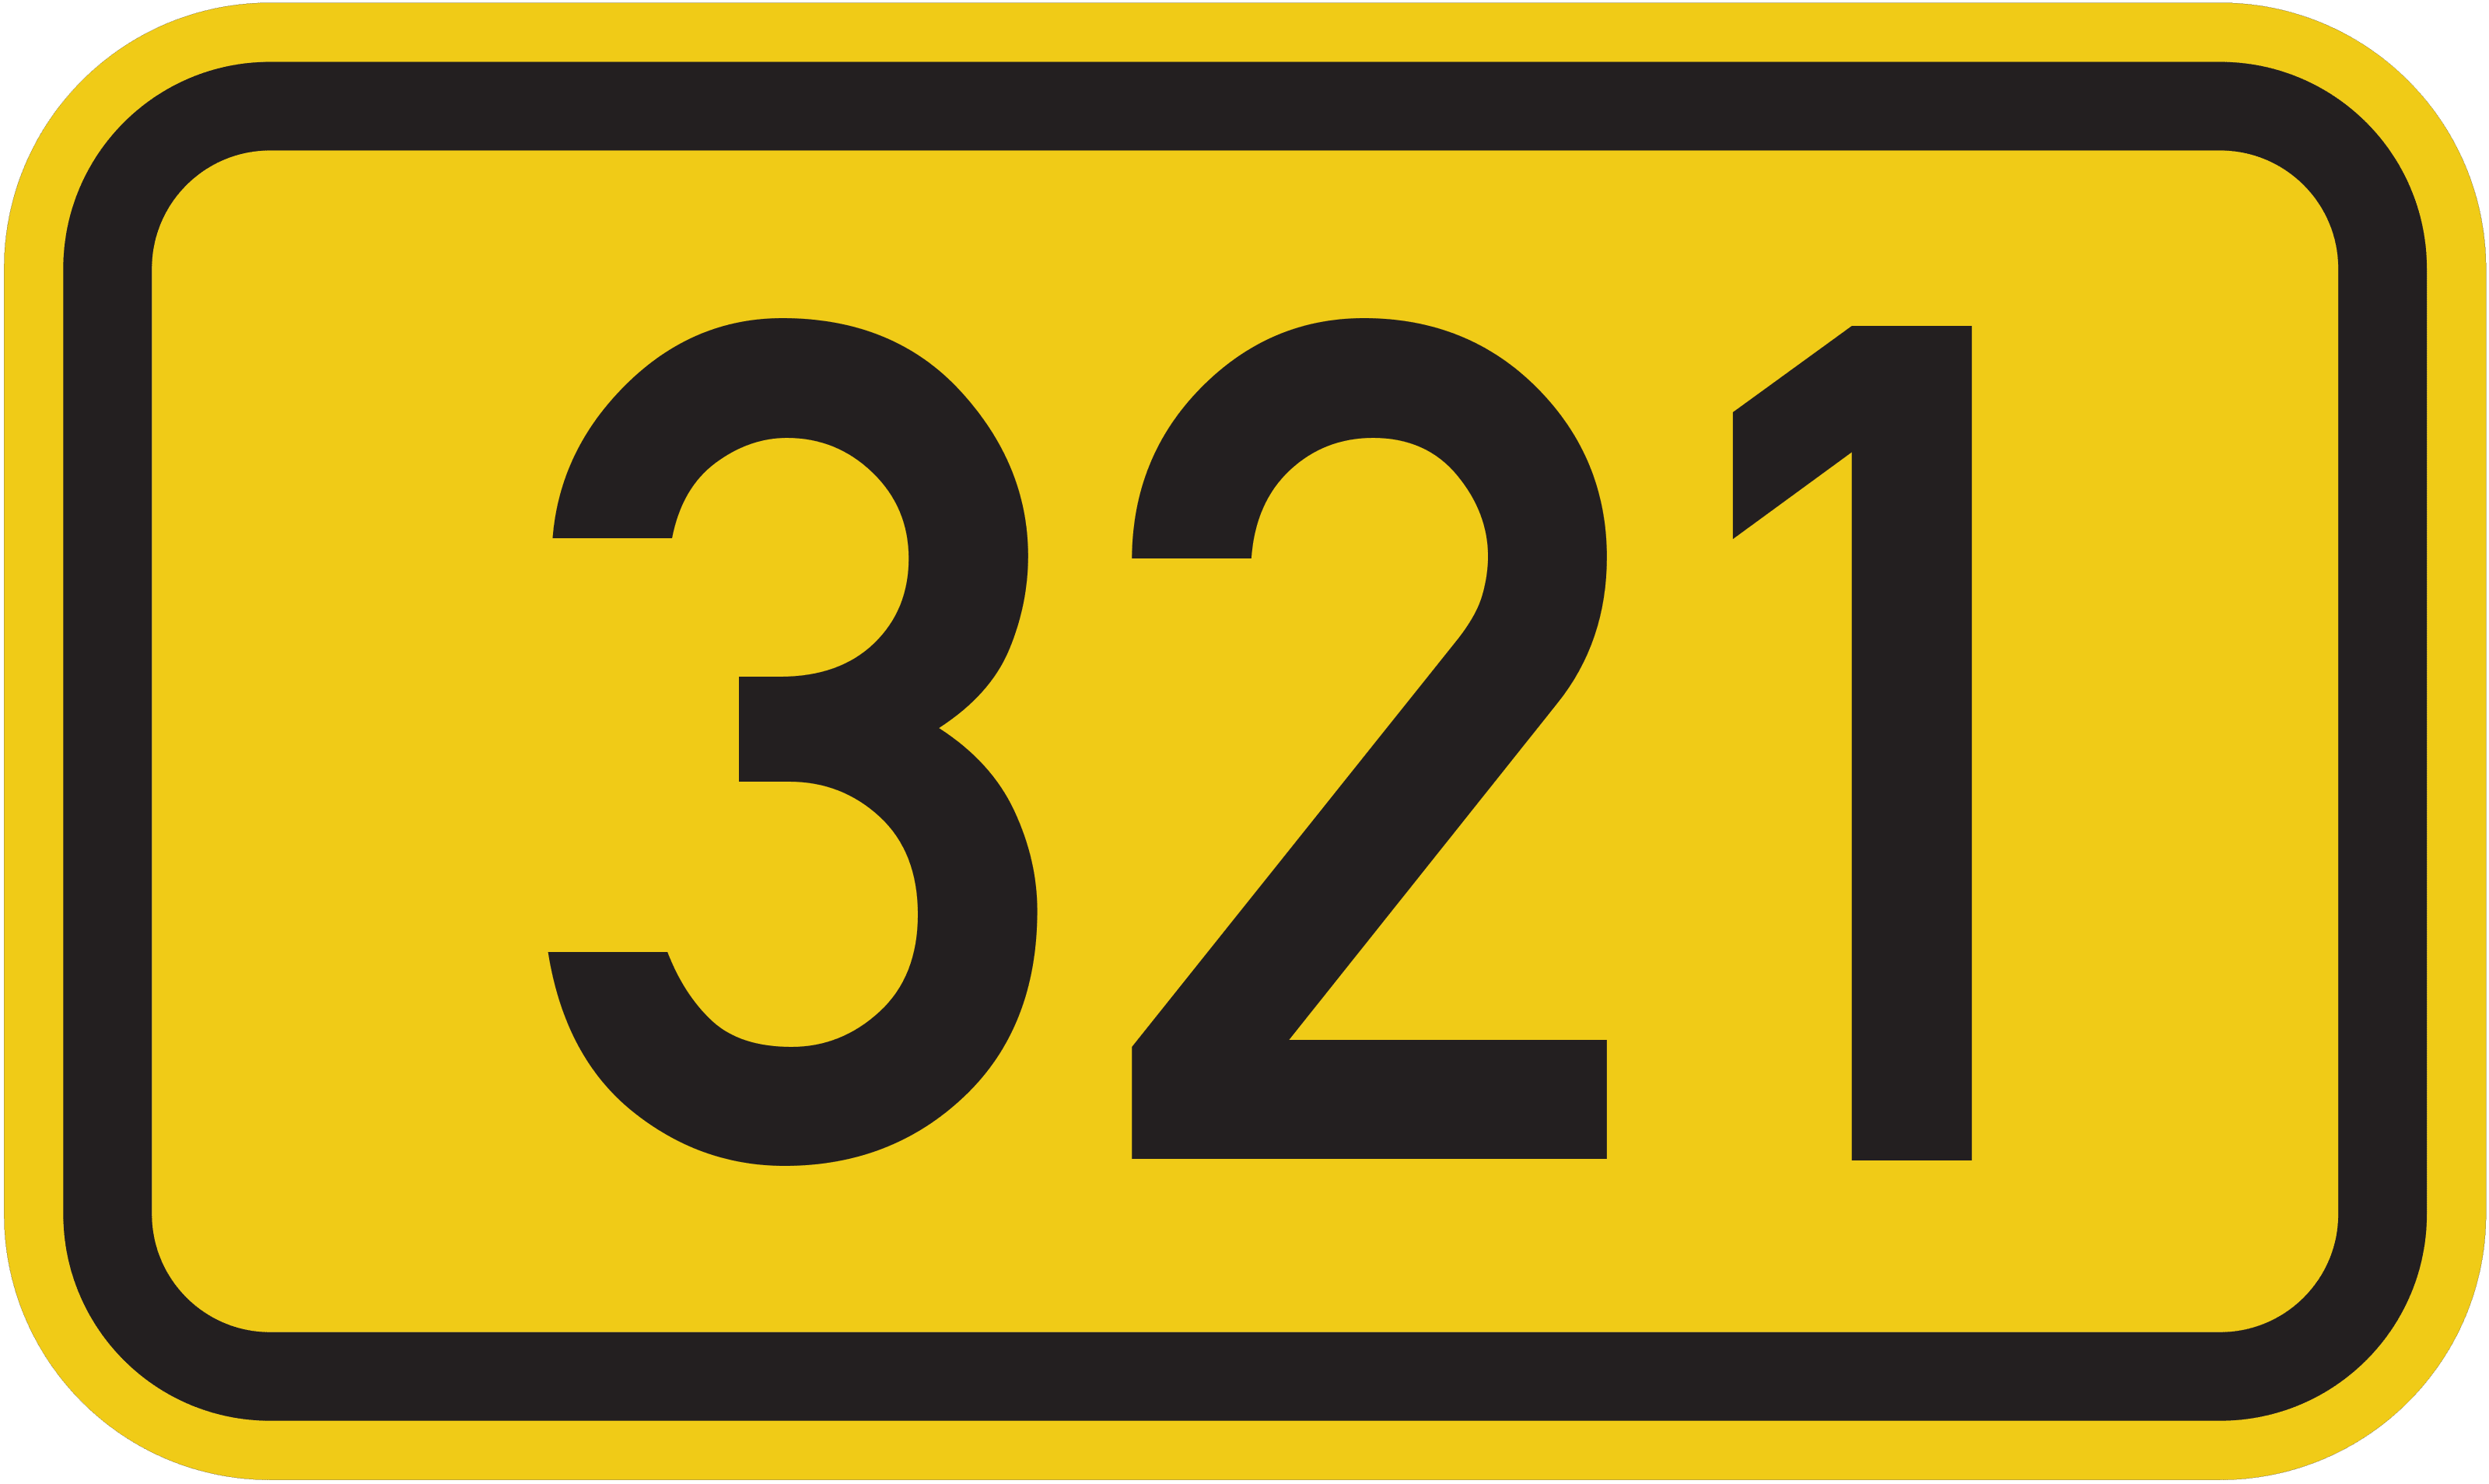 Bundesstraße 321